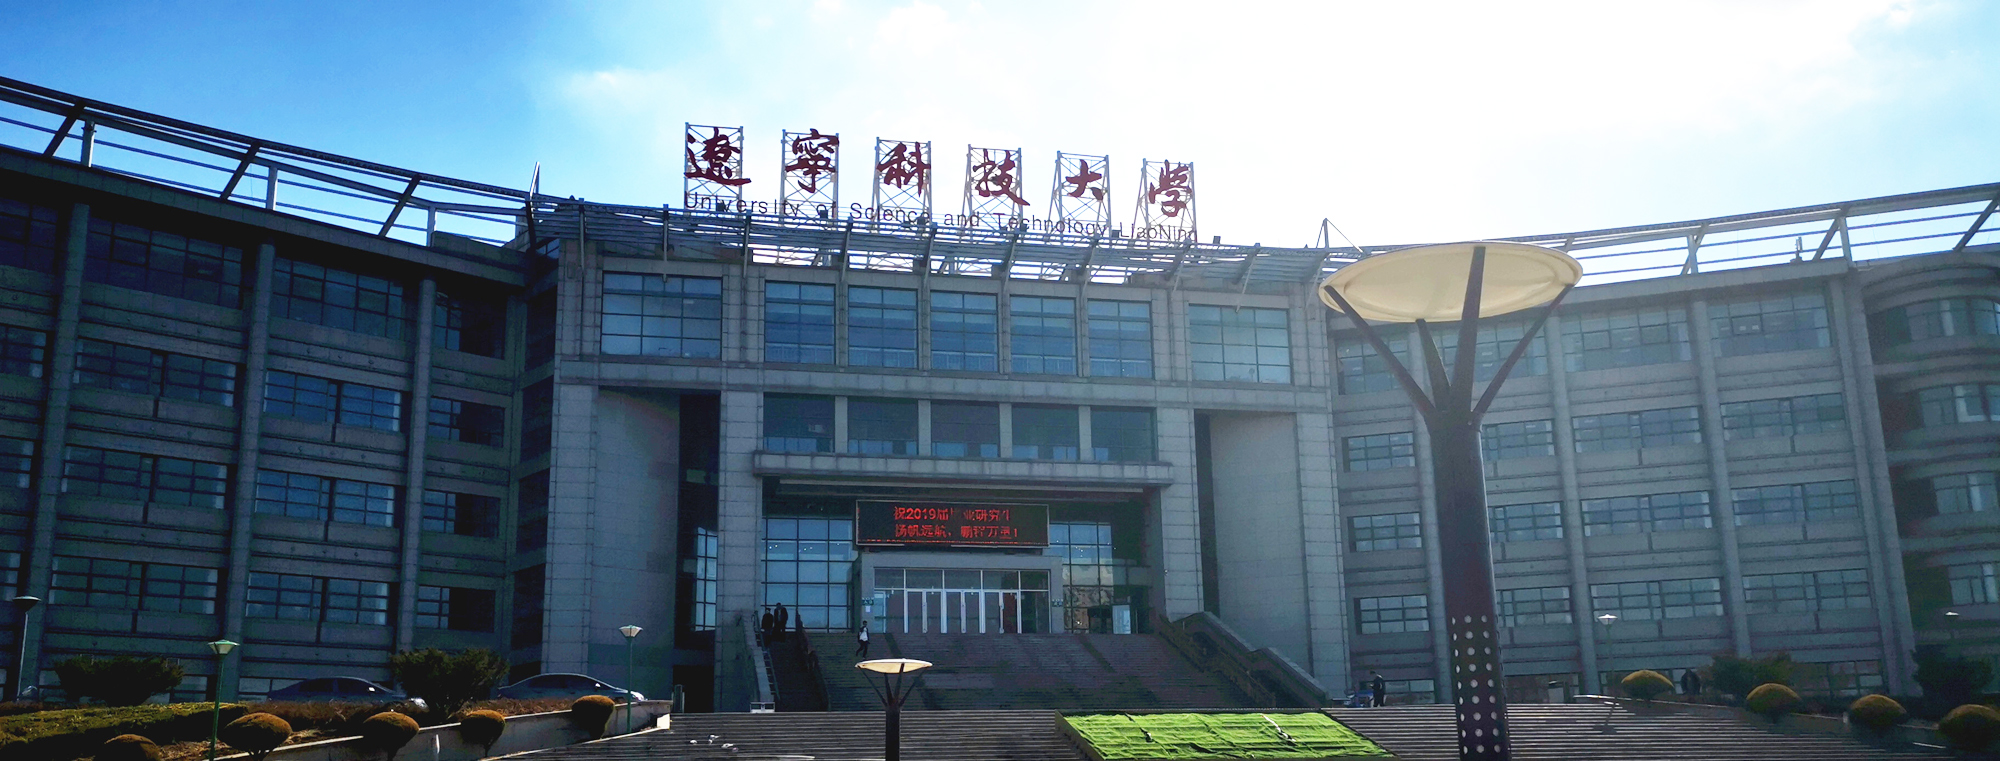 2019年4月1日，北京中教市培教育研究院一行人5人赴鞍山市教育局、海城市教育局再次就“鞍海峰会、千山教育论坛”筹备事项进一步落实。